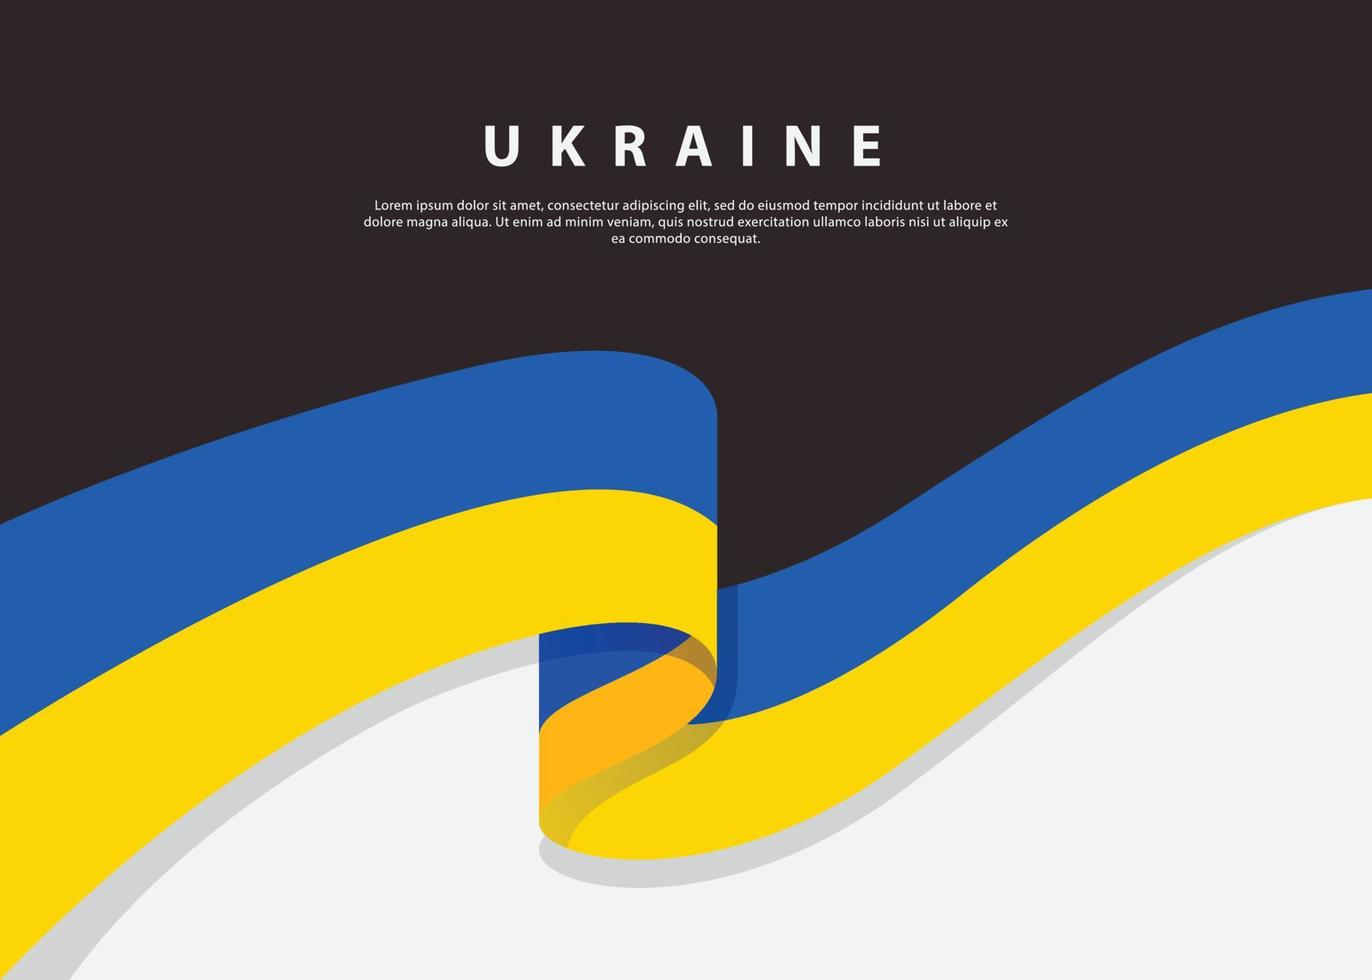 drapeau ukrainien sur fond sombre. conception d'illustration vectorielle vecteur